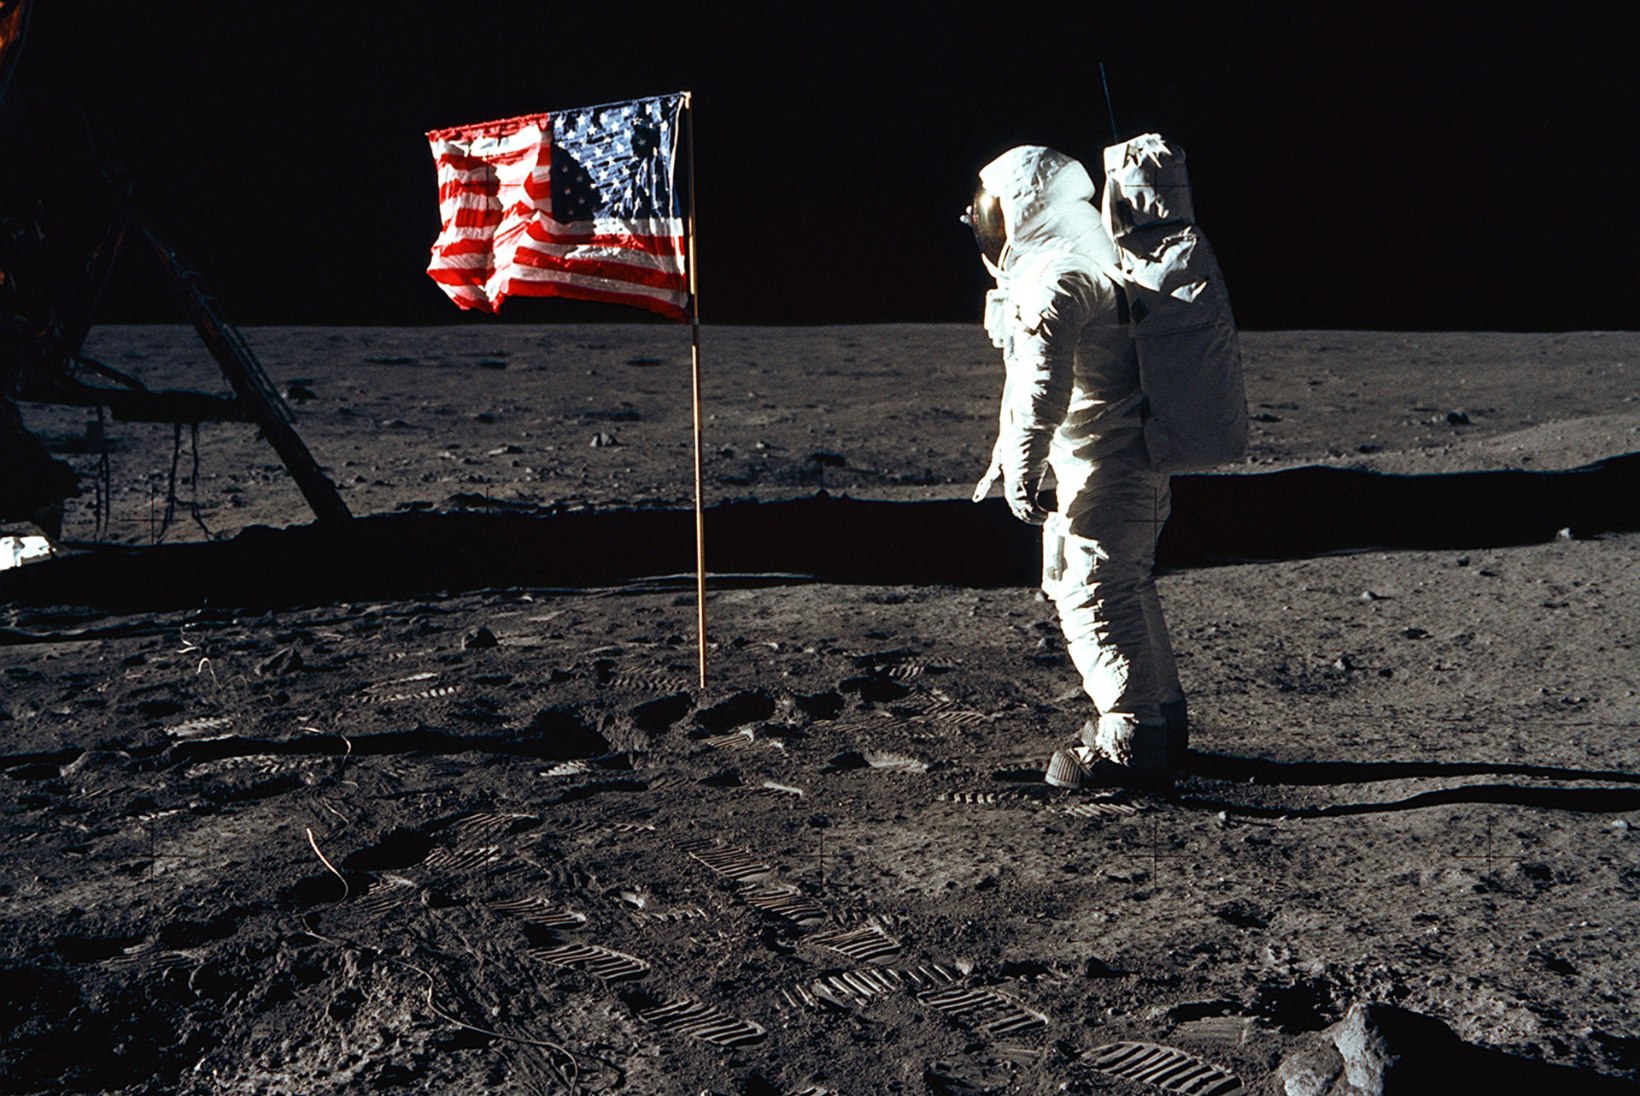 „IGOR VOLKE X-TOIMIKUD“ | Kas Neil Armstrong tõesti kohtus oma Kuu-missioonil tulnukatega?